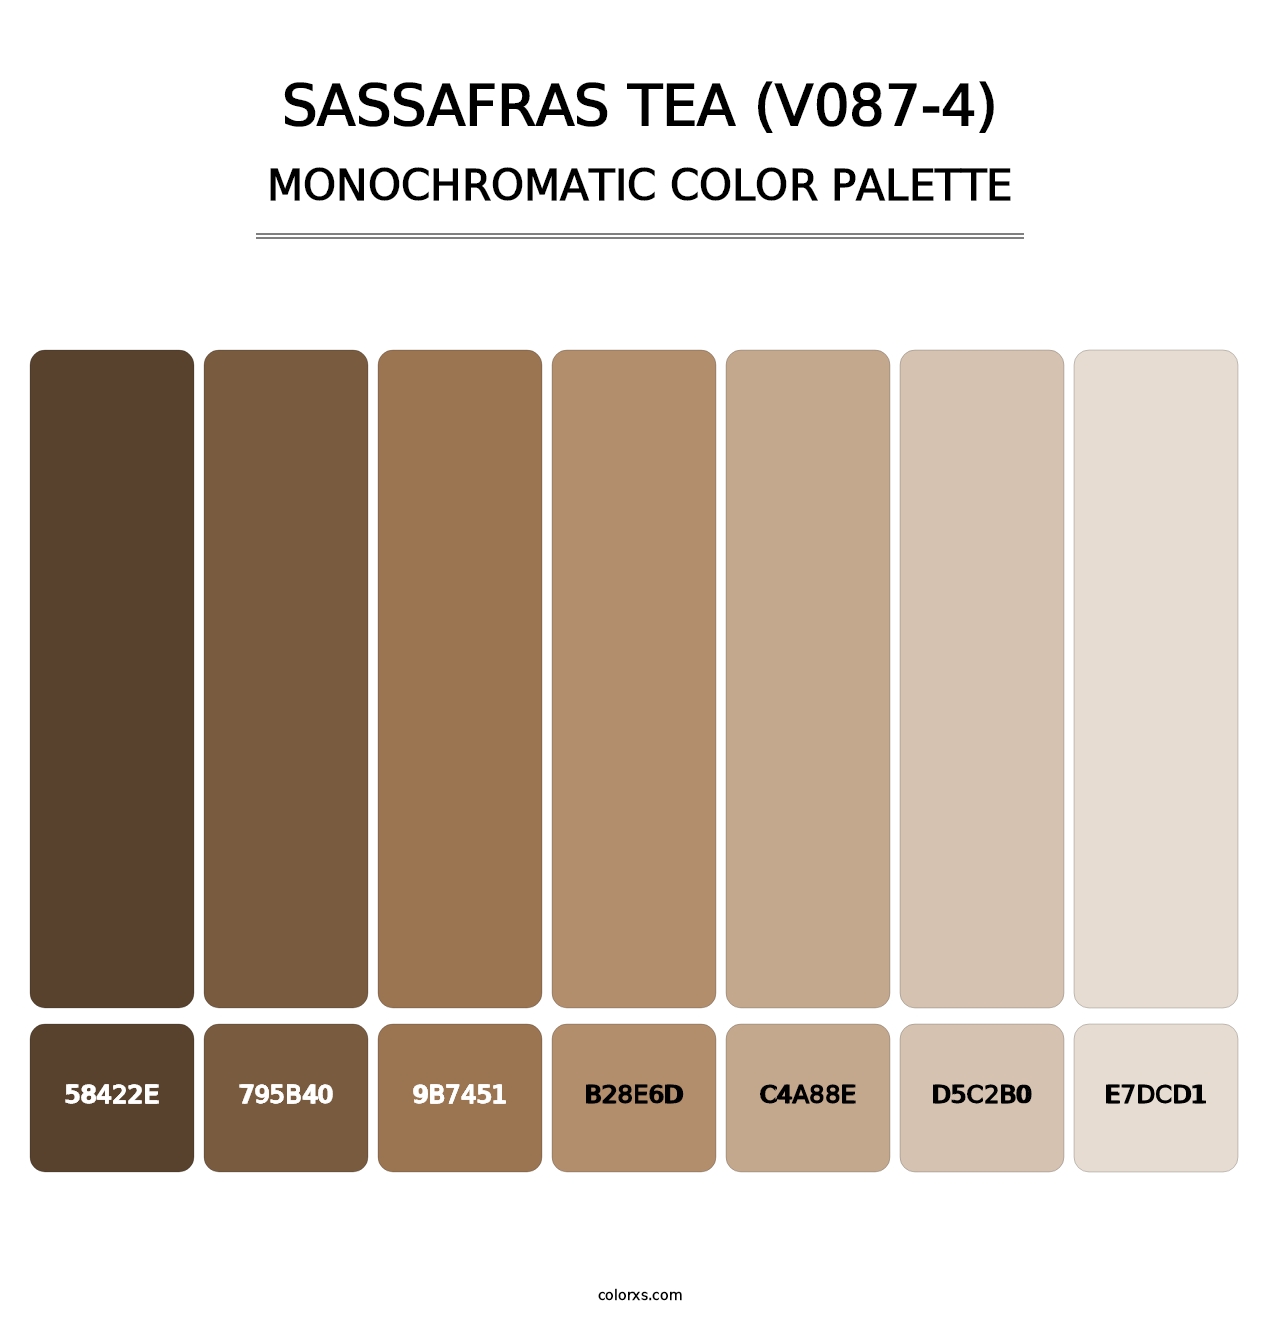 Sassafras Tea (V087-4) - Monochromatic Color Palette